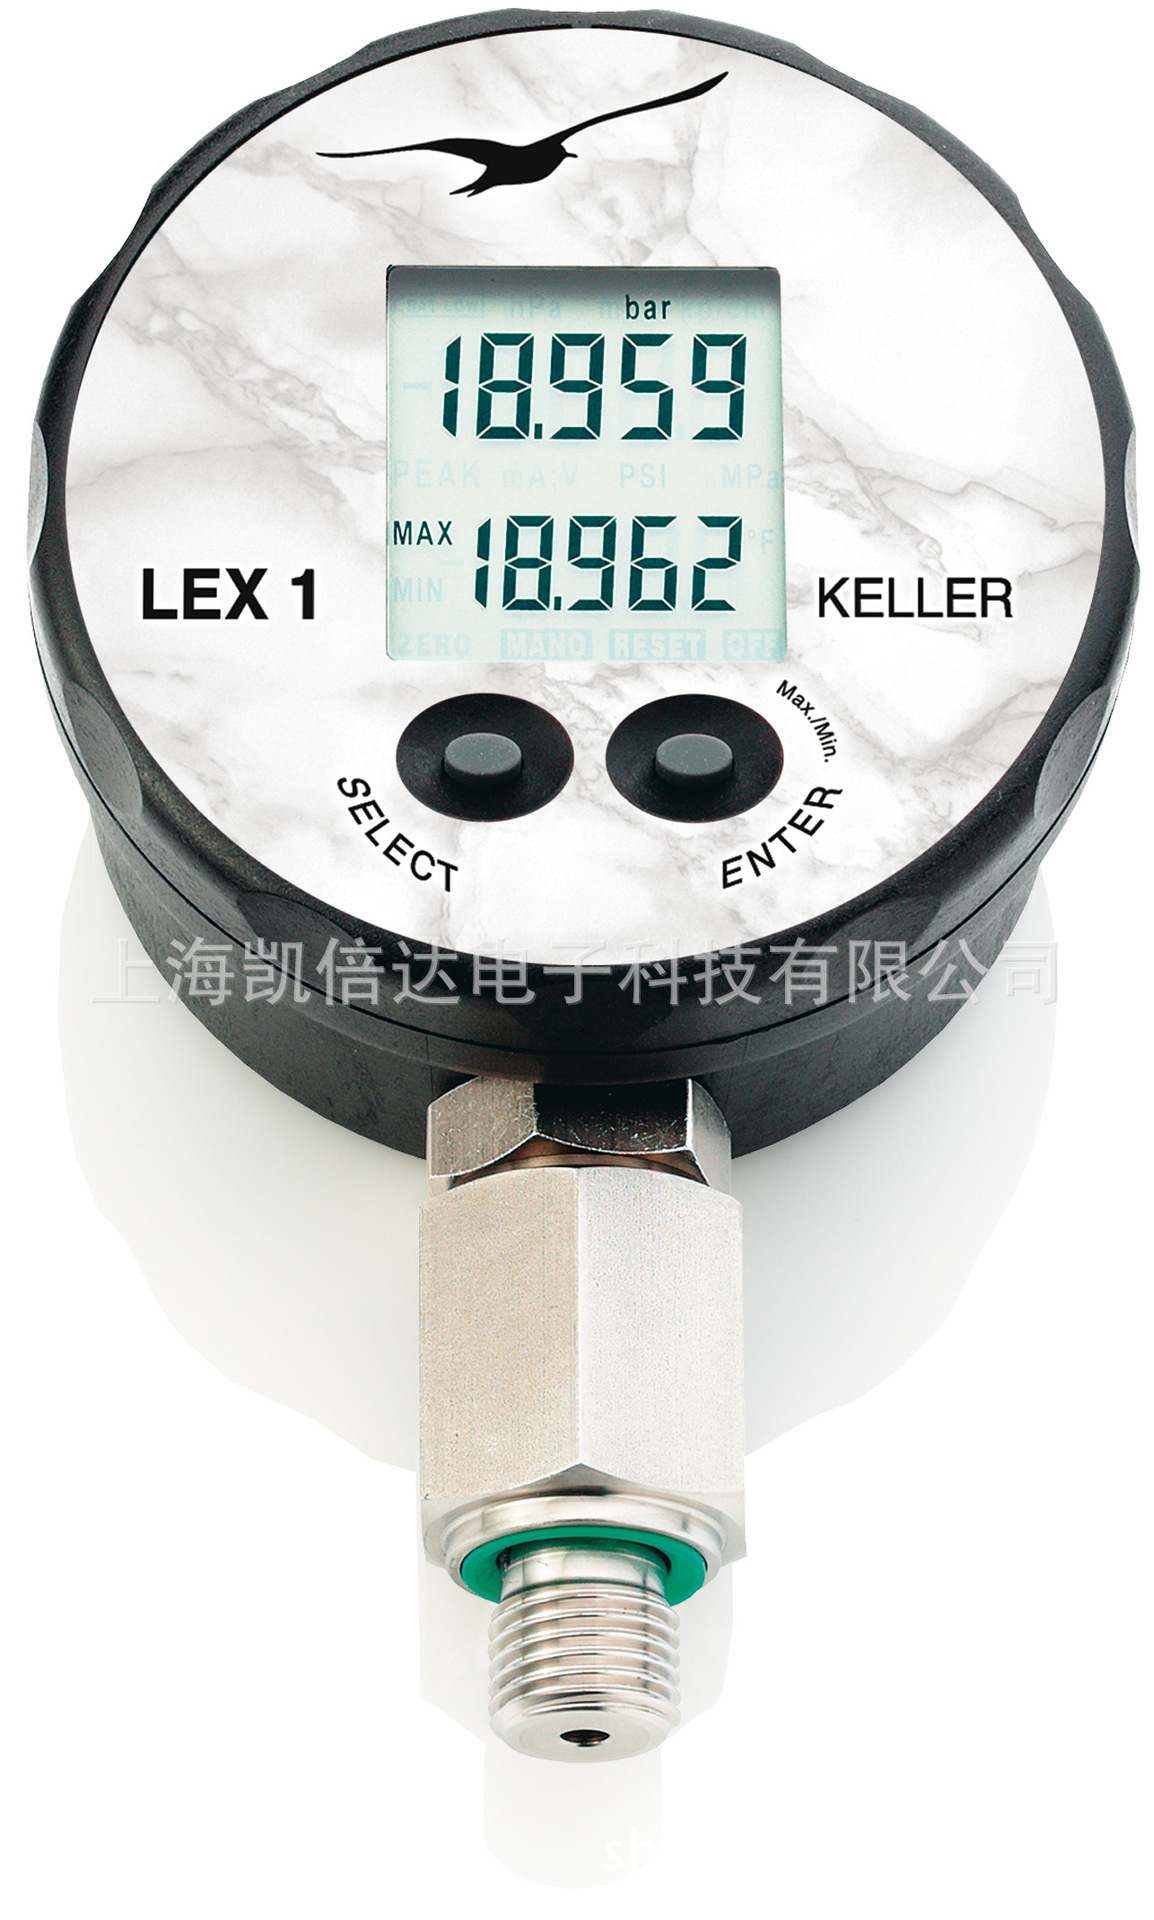 供应KELLER LEX1超高精度5位数字压力表|ms